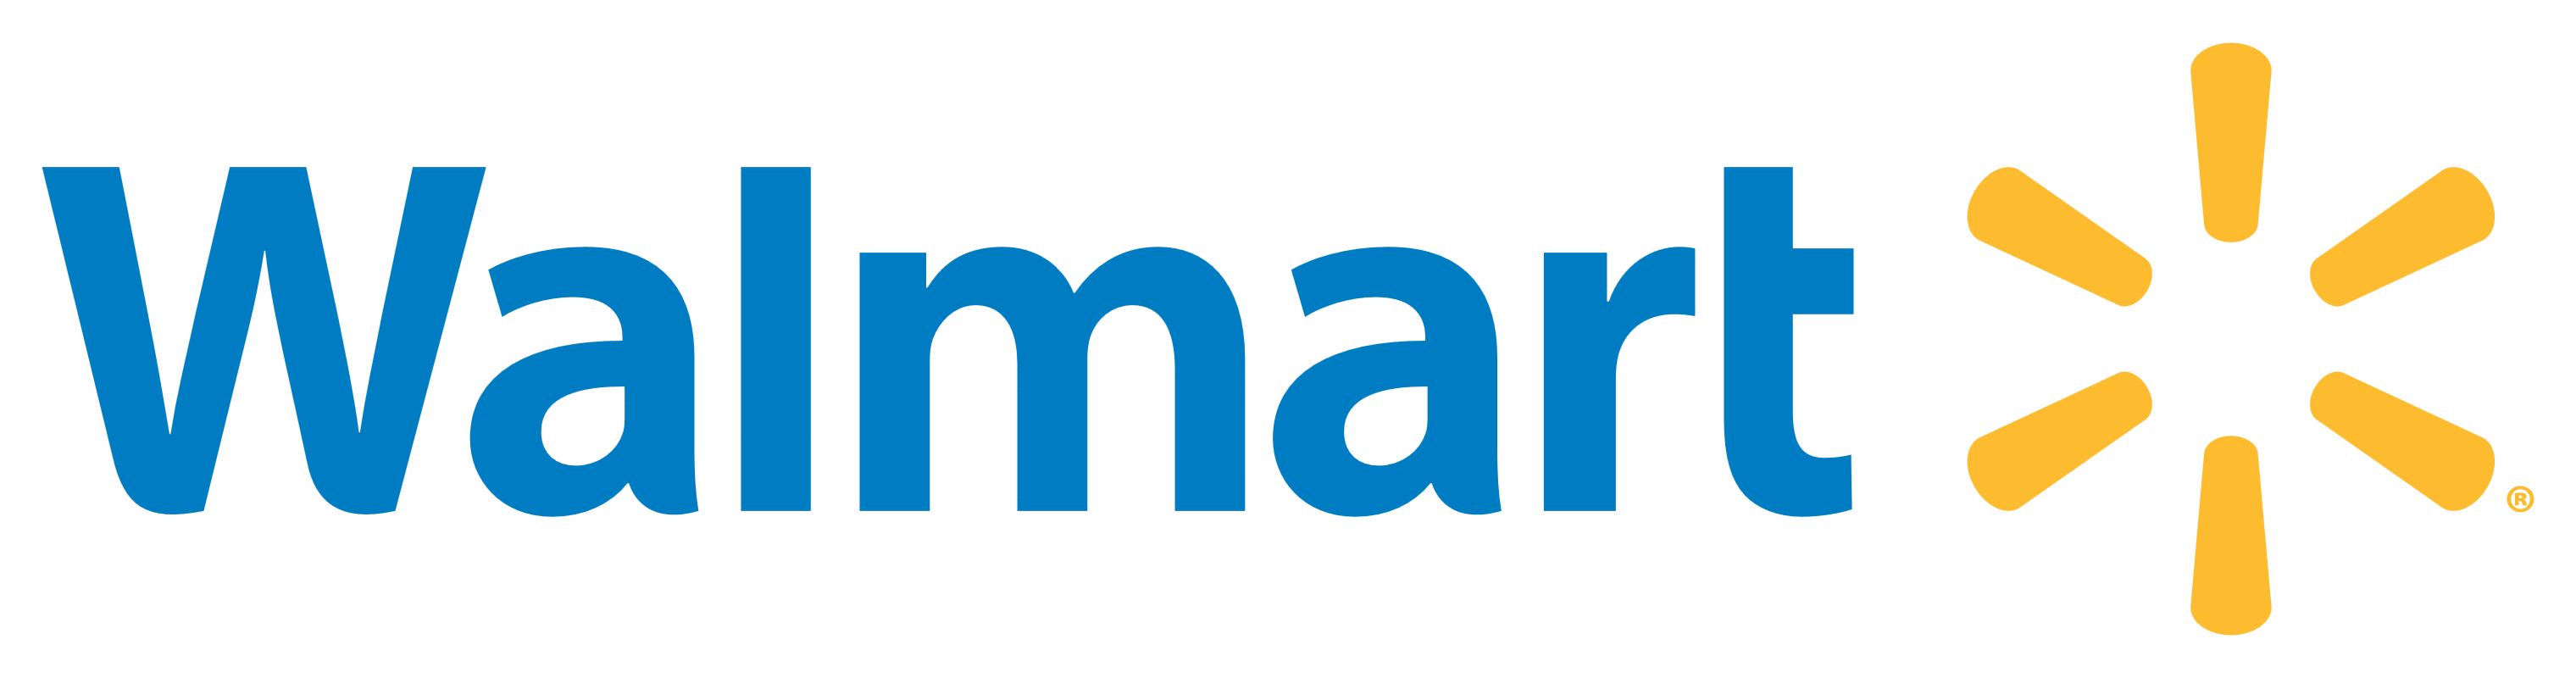 Wamart logo